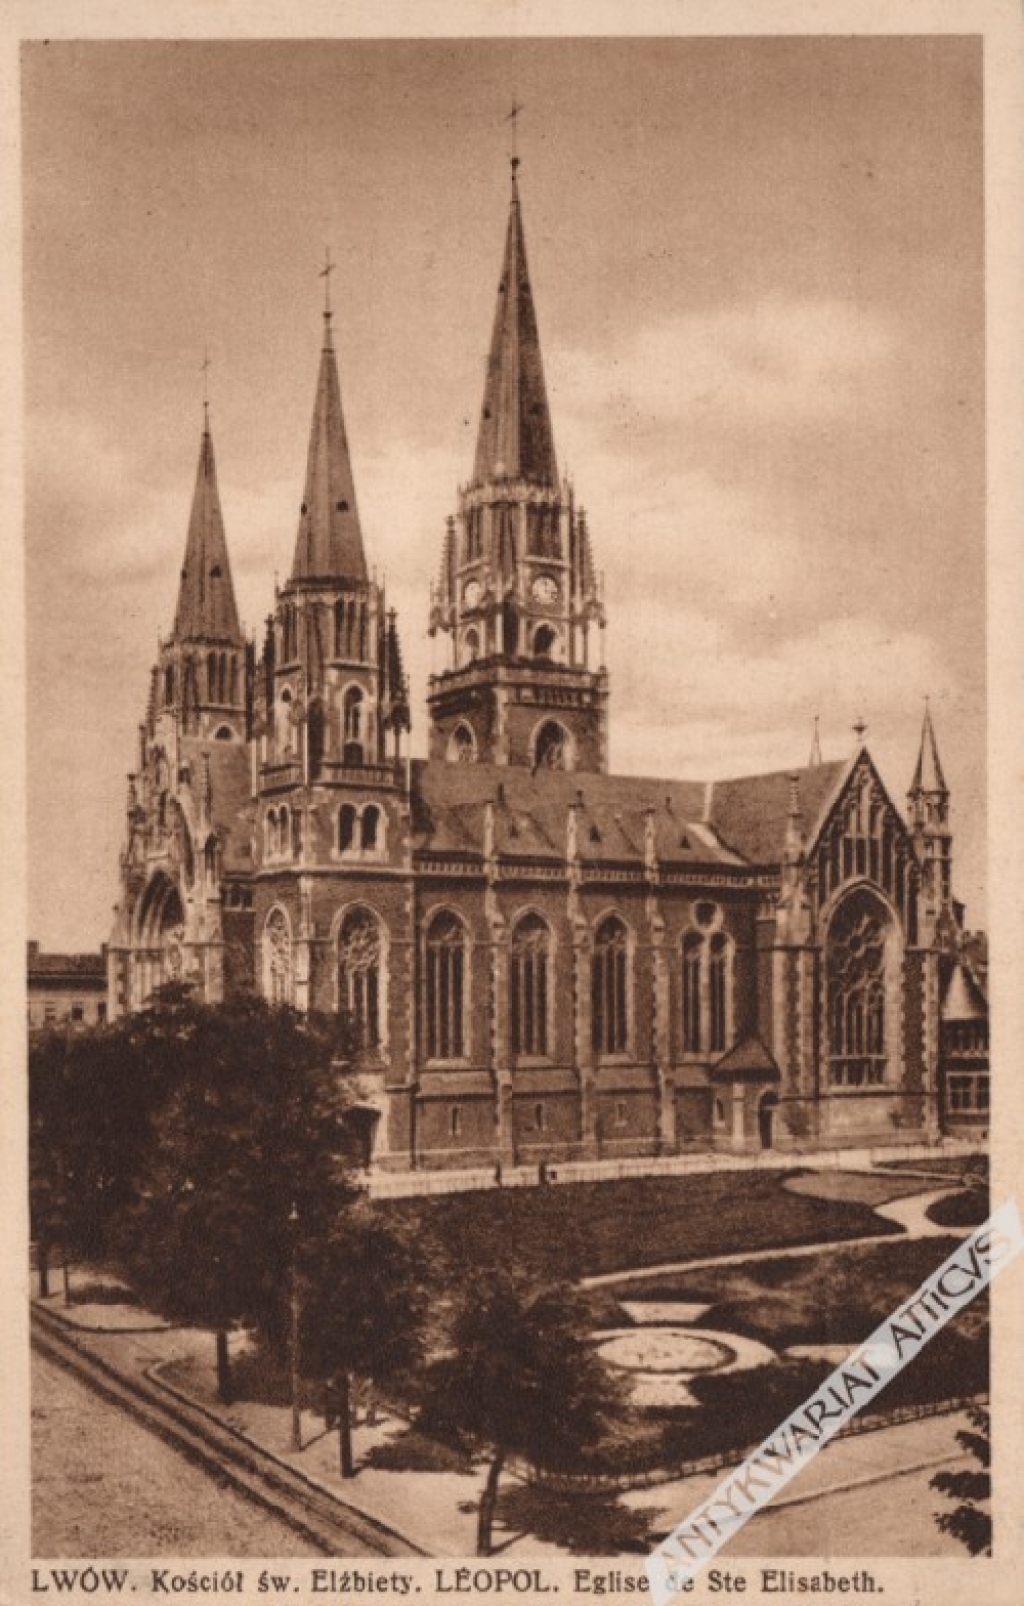 [pocztówka, ok. 1930] Lwów. Kościół św. Elżbiety. Leopol. Eglise de Ste Elisabeth